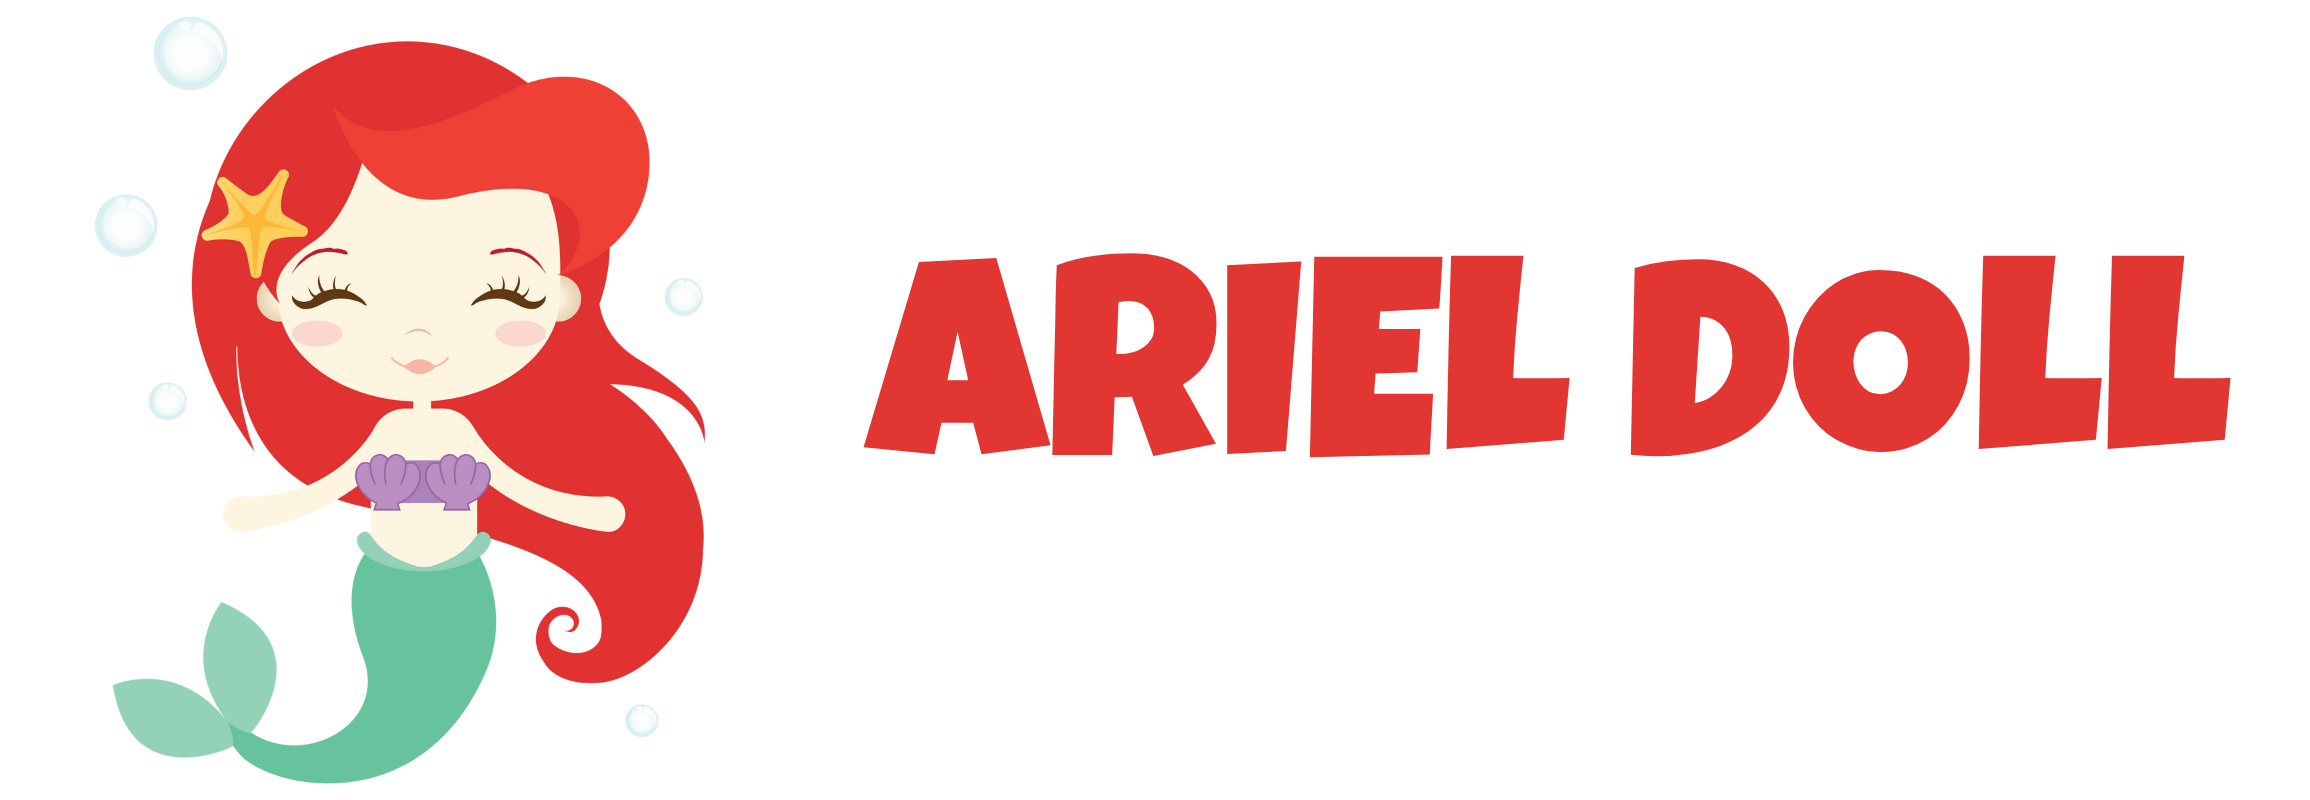 ariel doll logo1 1 - Ariel Doll